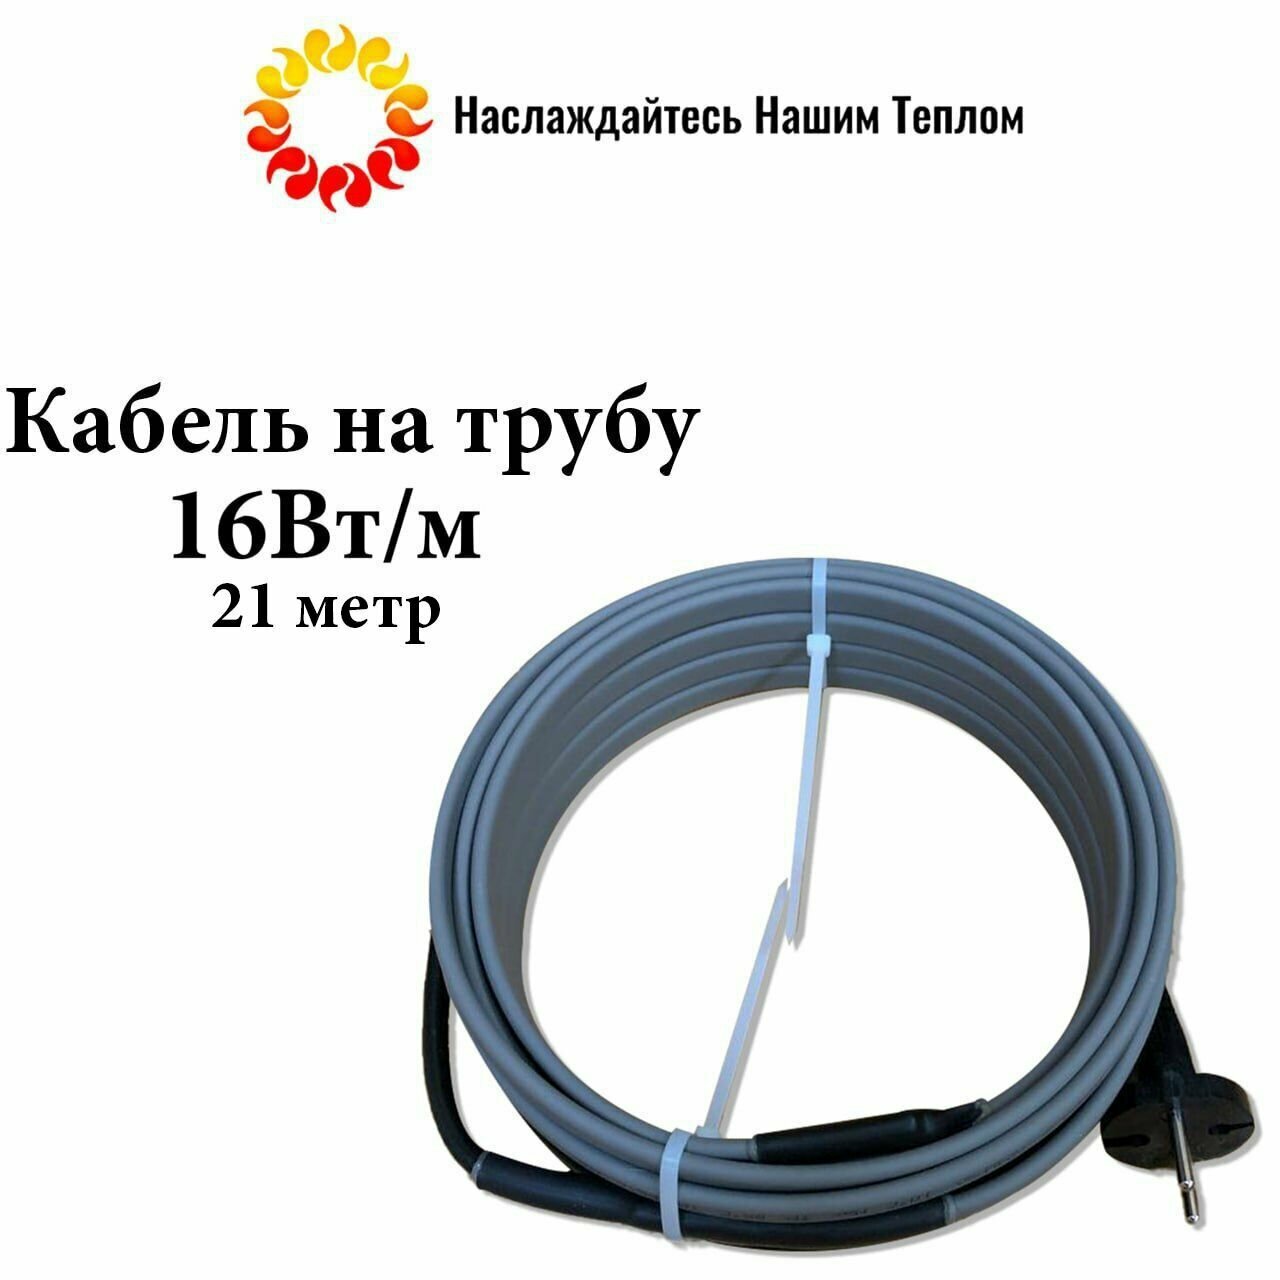 Саморегулирующийся греющий кабель на трубу (наружный) для водопровода и канализации, 16 Вт/м, длина 21 метр